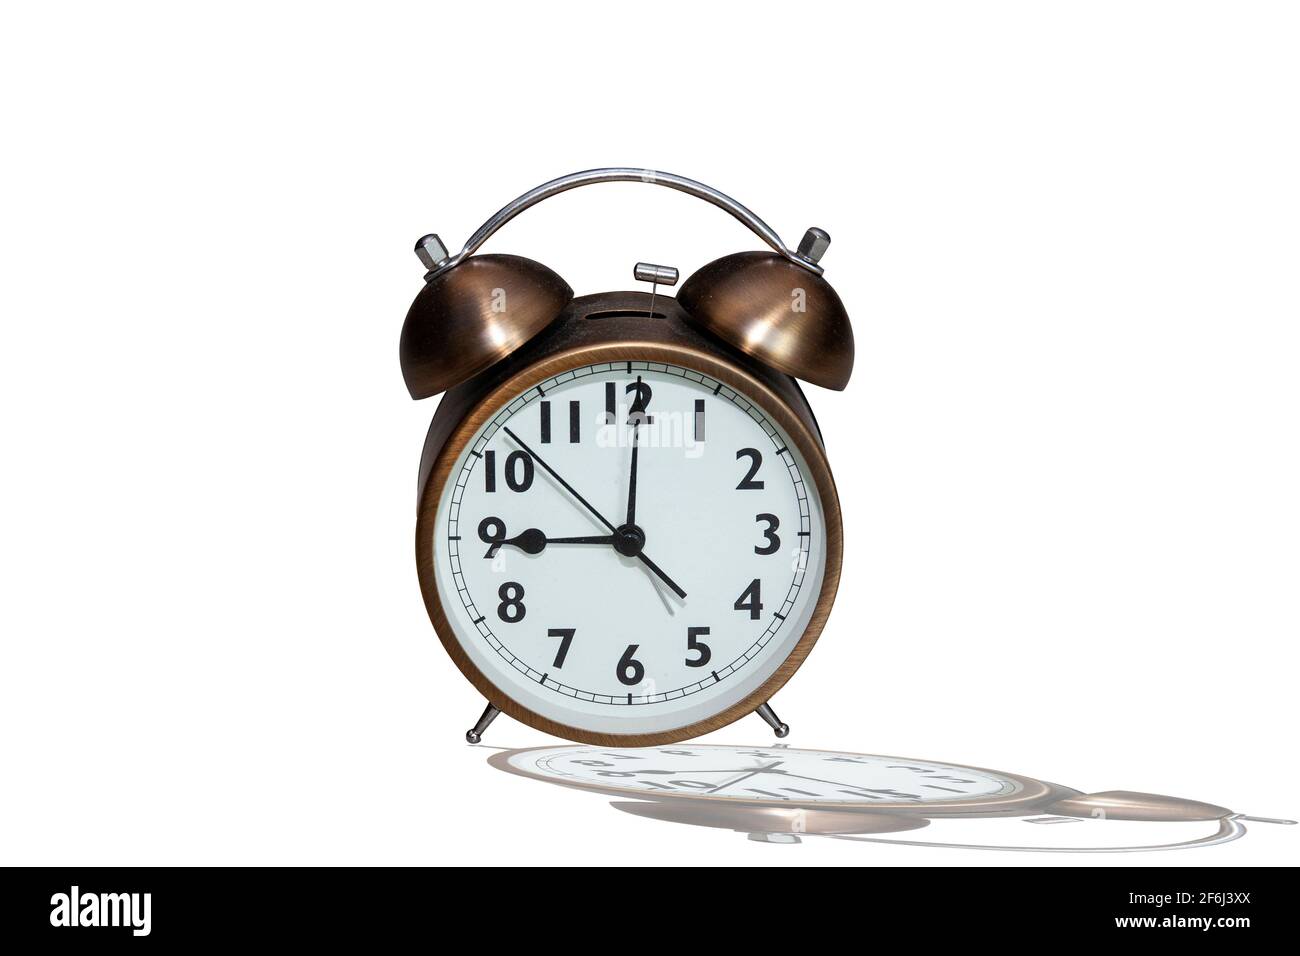 an alarm clock indicating 9 o'clock rush hour Stock Photo